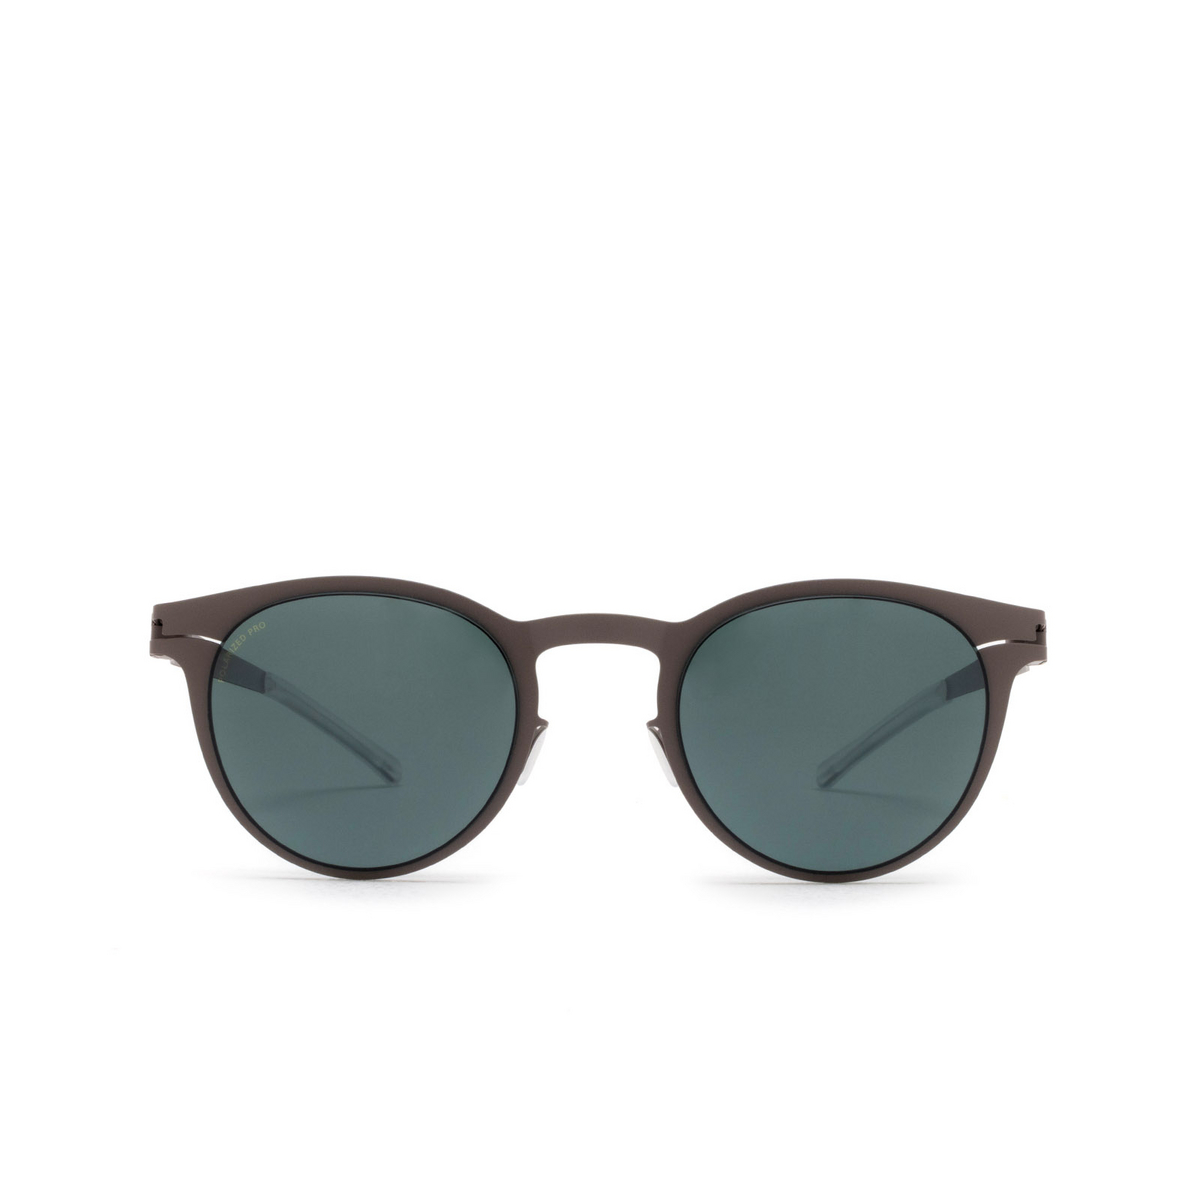 Mykita® Square Sunglasses: Riley color 223 Mole Grey - front view